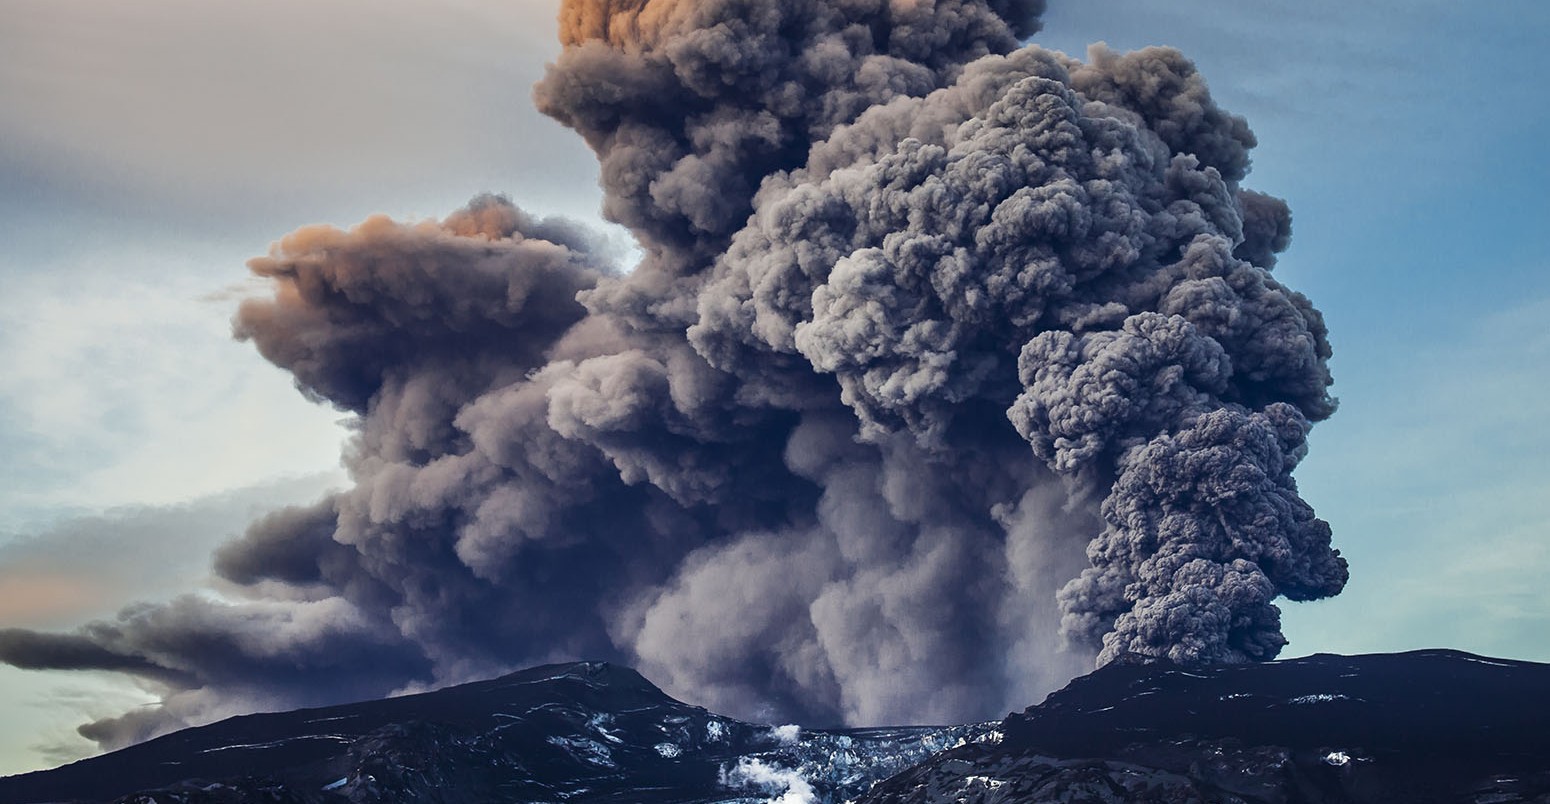 Volcano erupting in Iceland